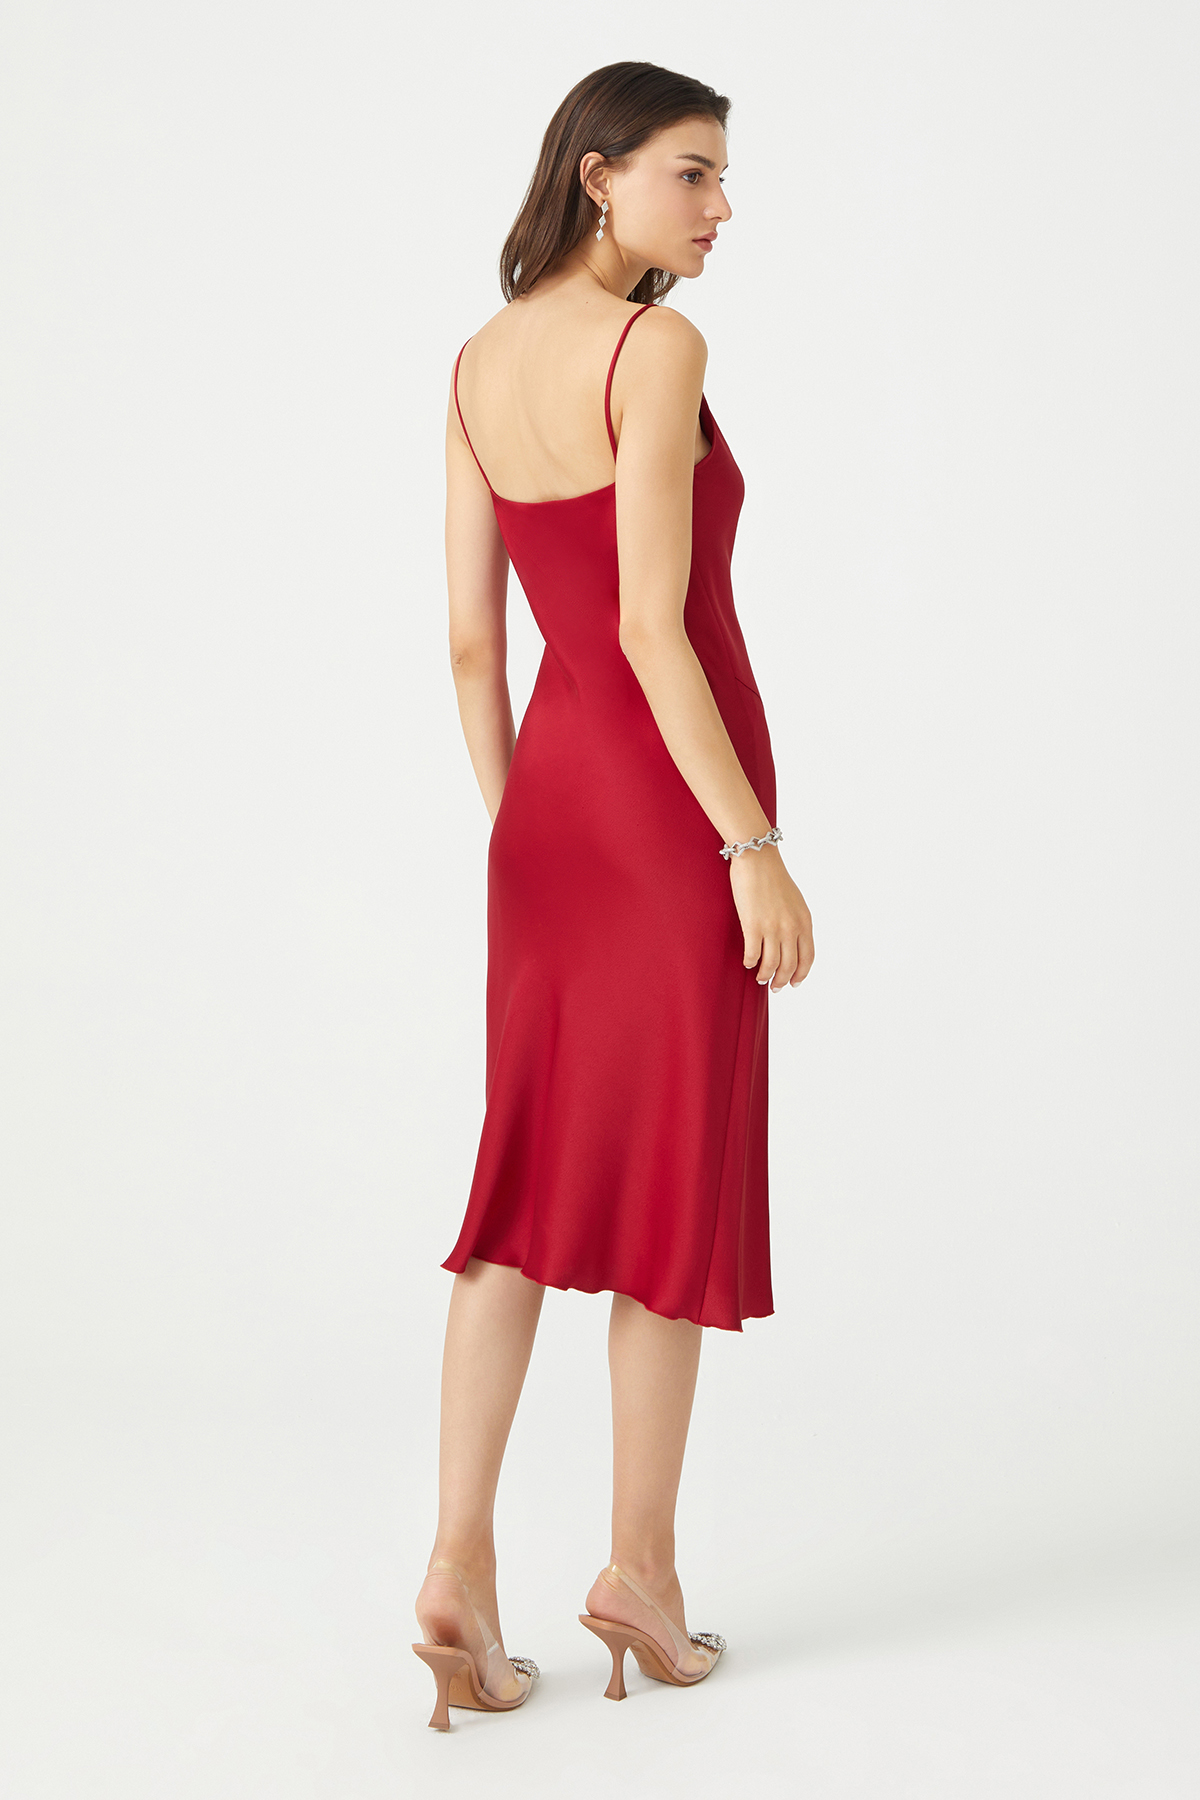 PAMELA Slit Detailed Satin Red Slip Dress